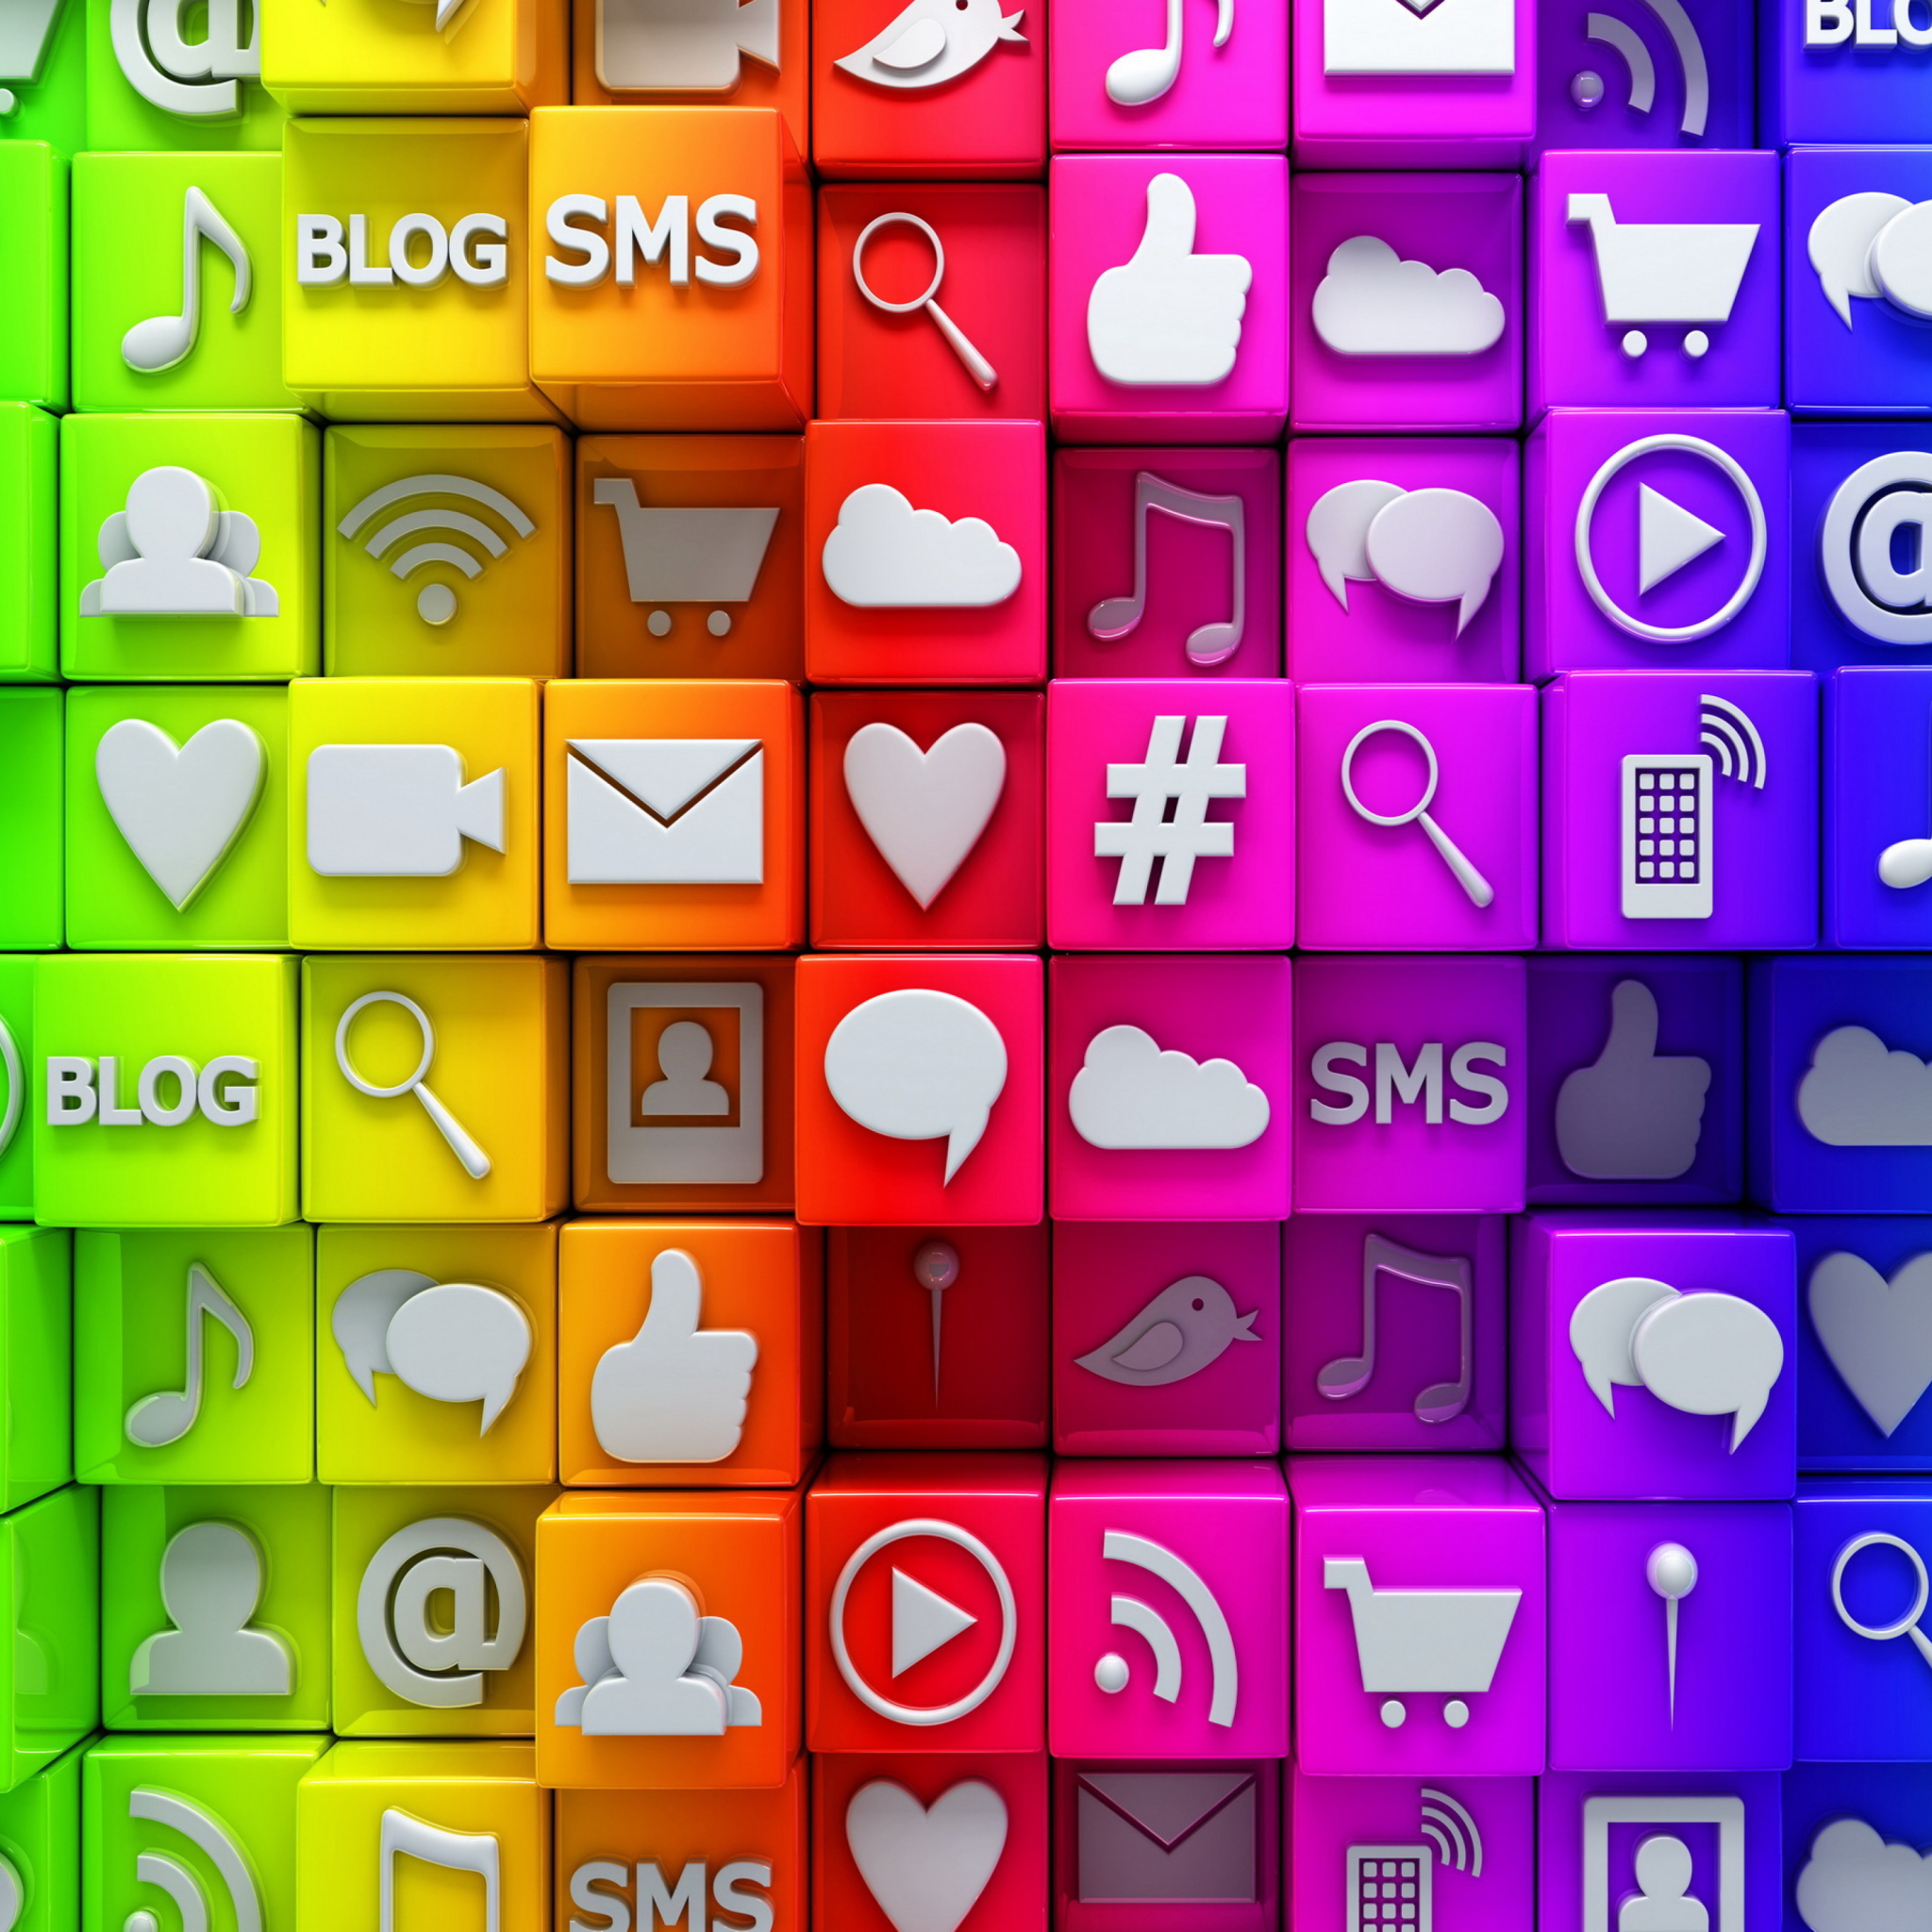 Sfondi Social  Media Icons: SMS, Blog 2048x2048